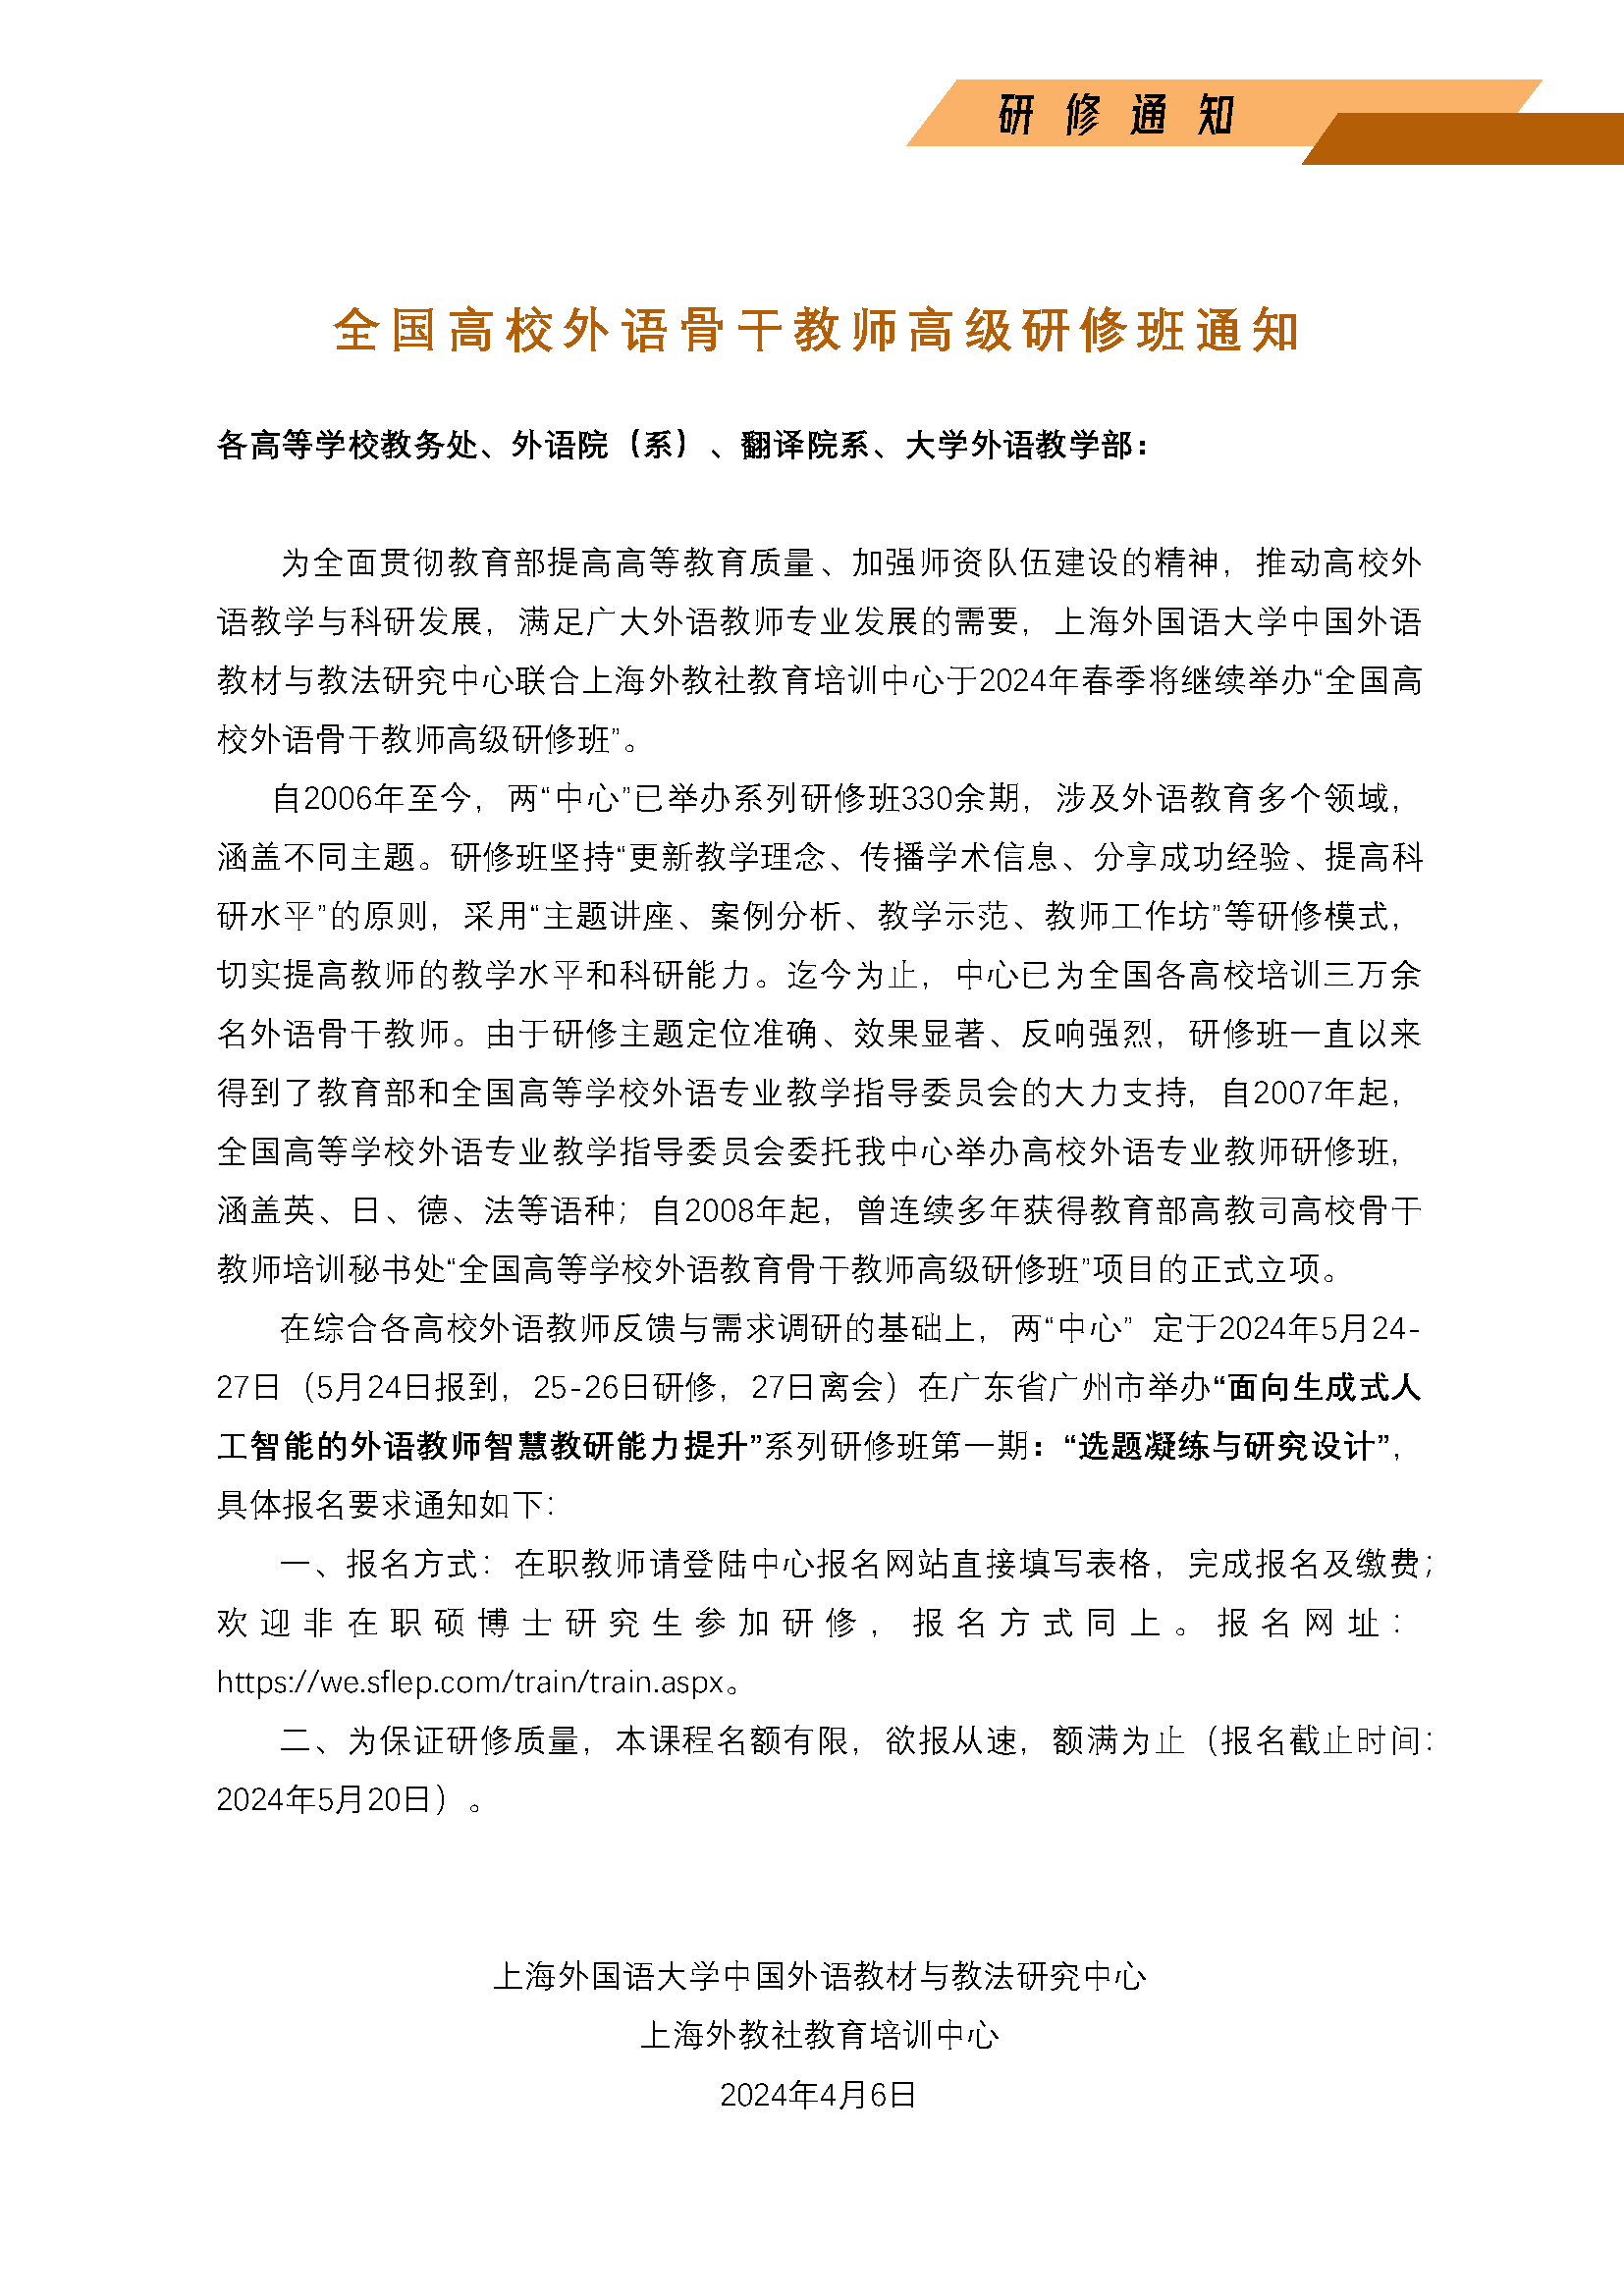 广州举办--面向AIGC的智慧教研能力提升系列研修班第一期_页面_2.png